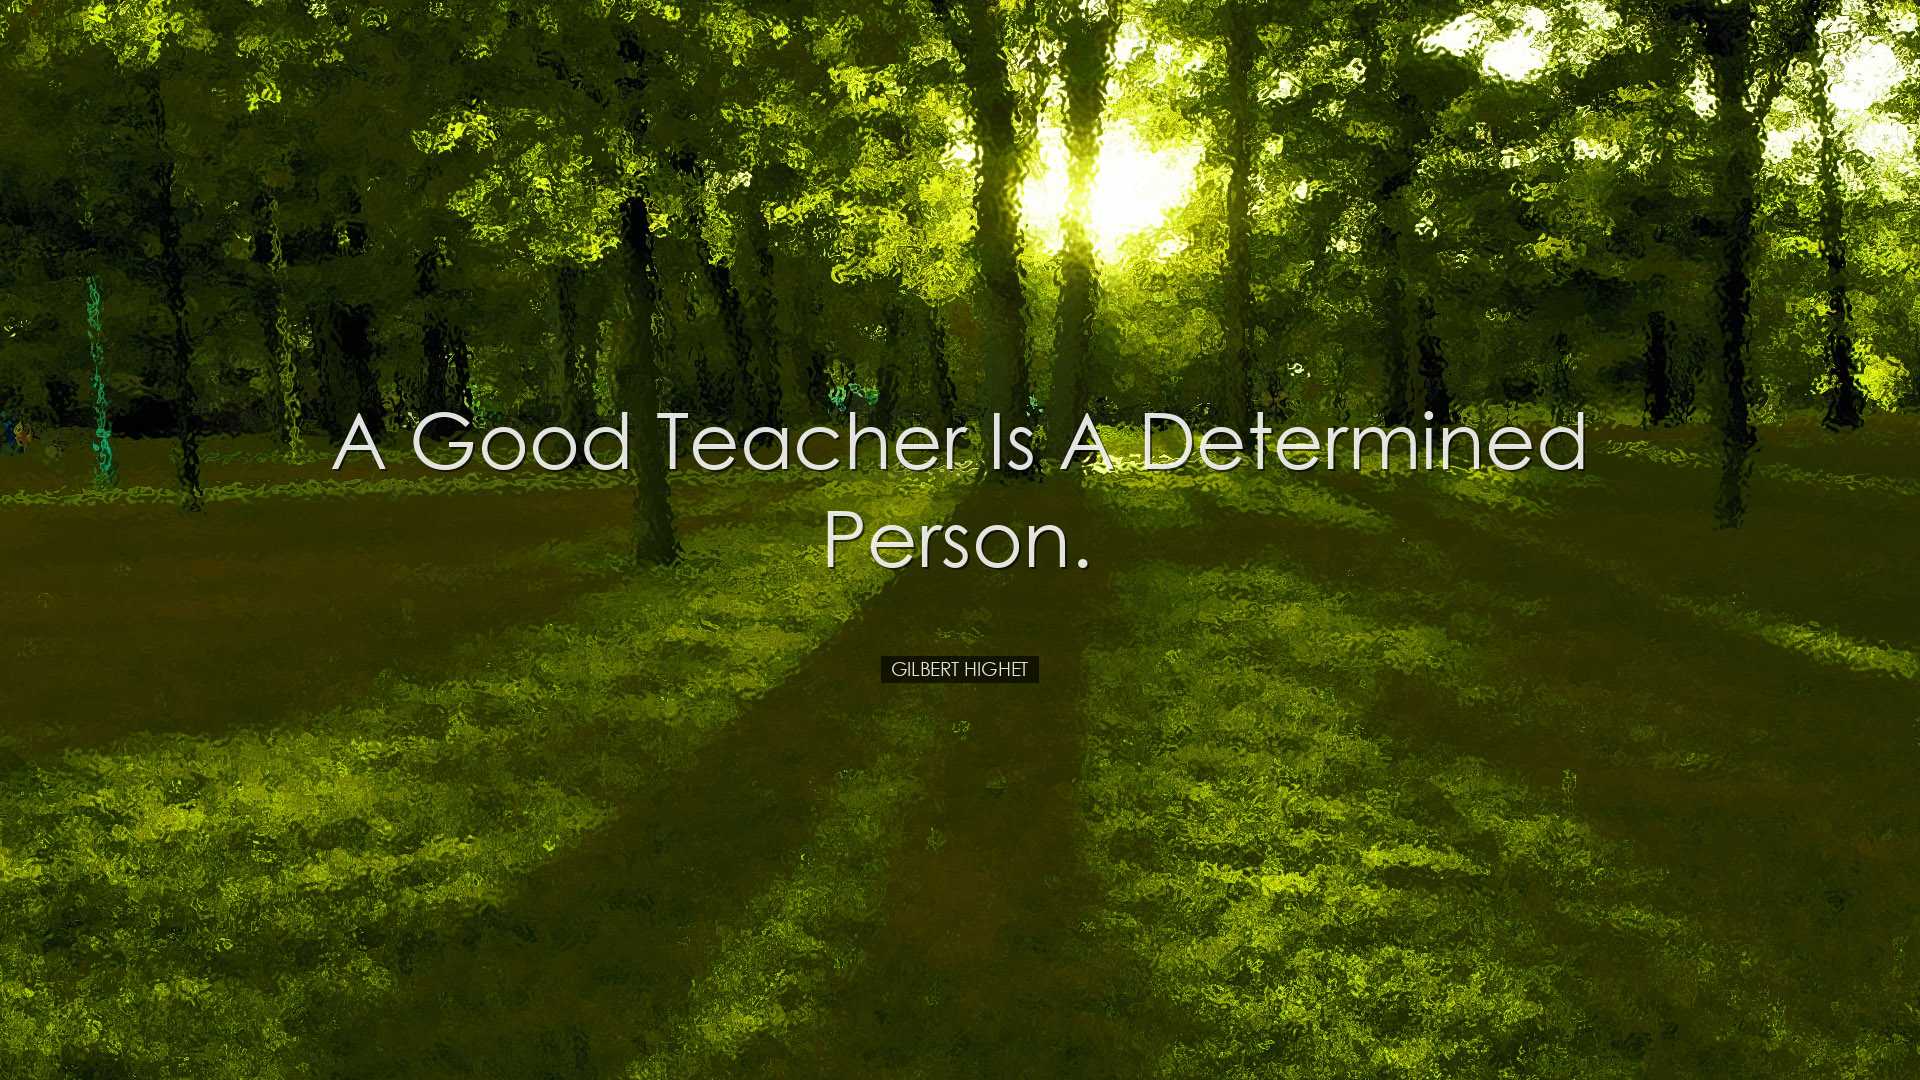 A good teacher is a determined person. - Gilbert Highet